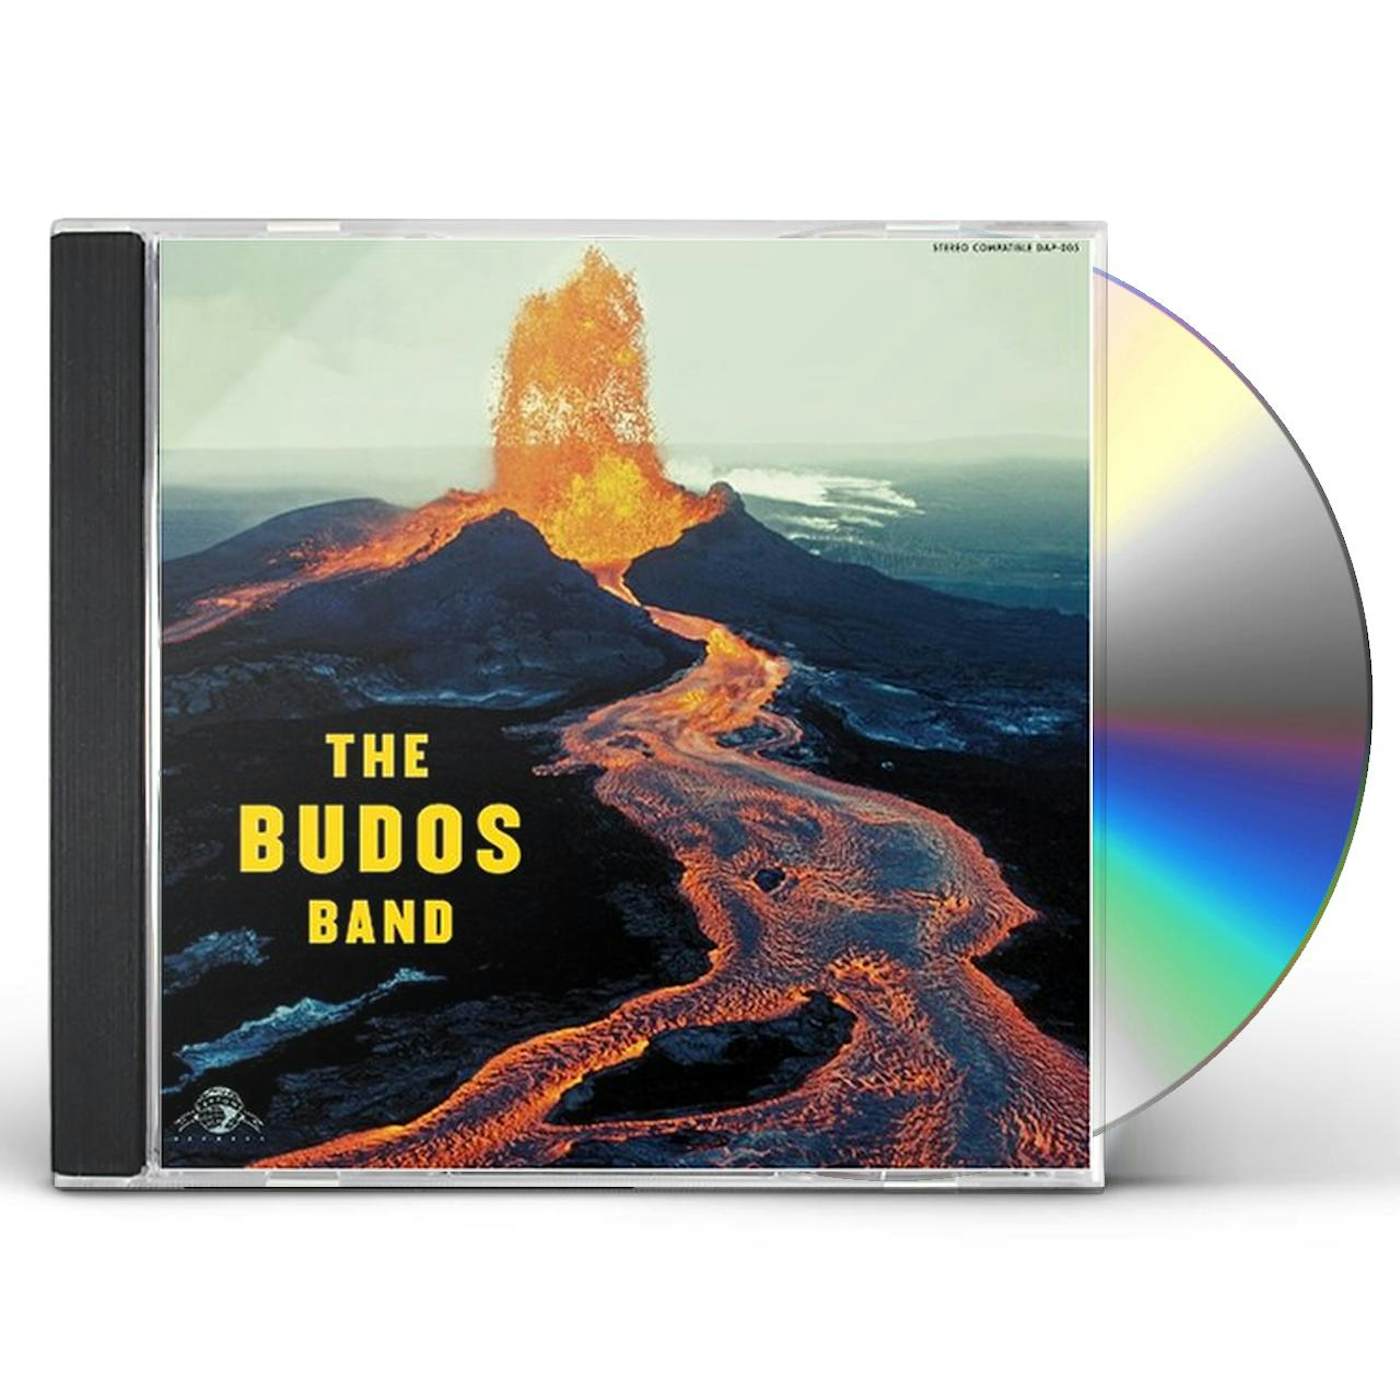 The Budos Band CD